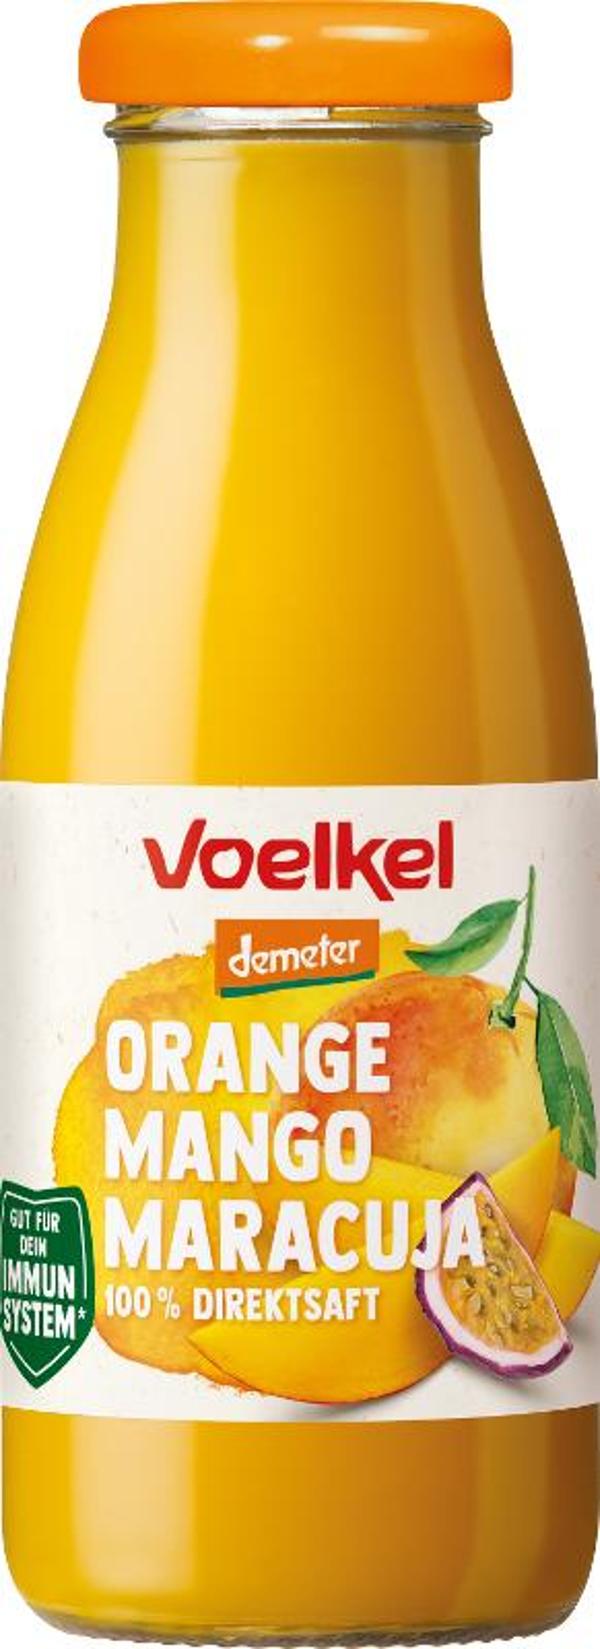 Produktfoto zu Orange Mango Maracuja 100% Direktsaft 0,25l VOE